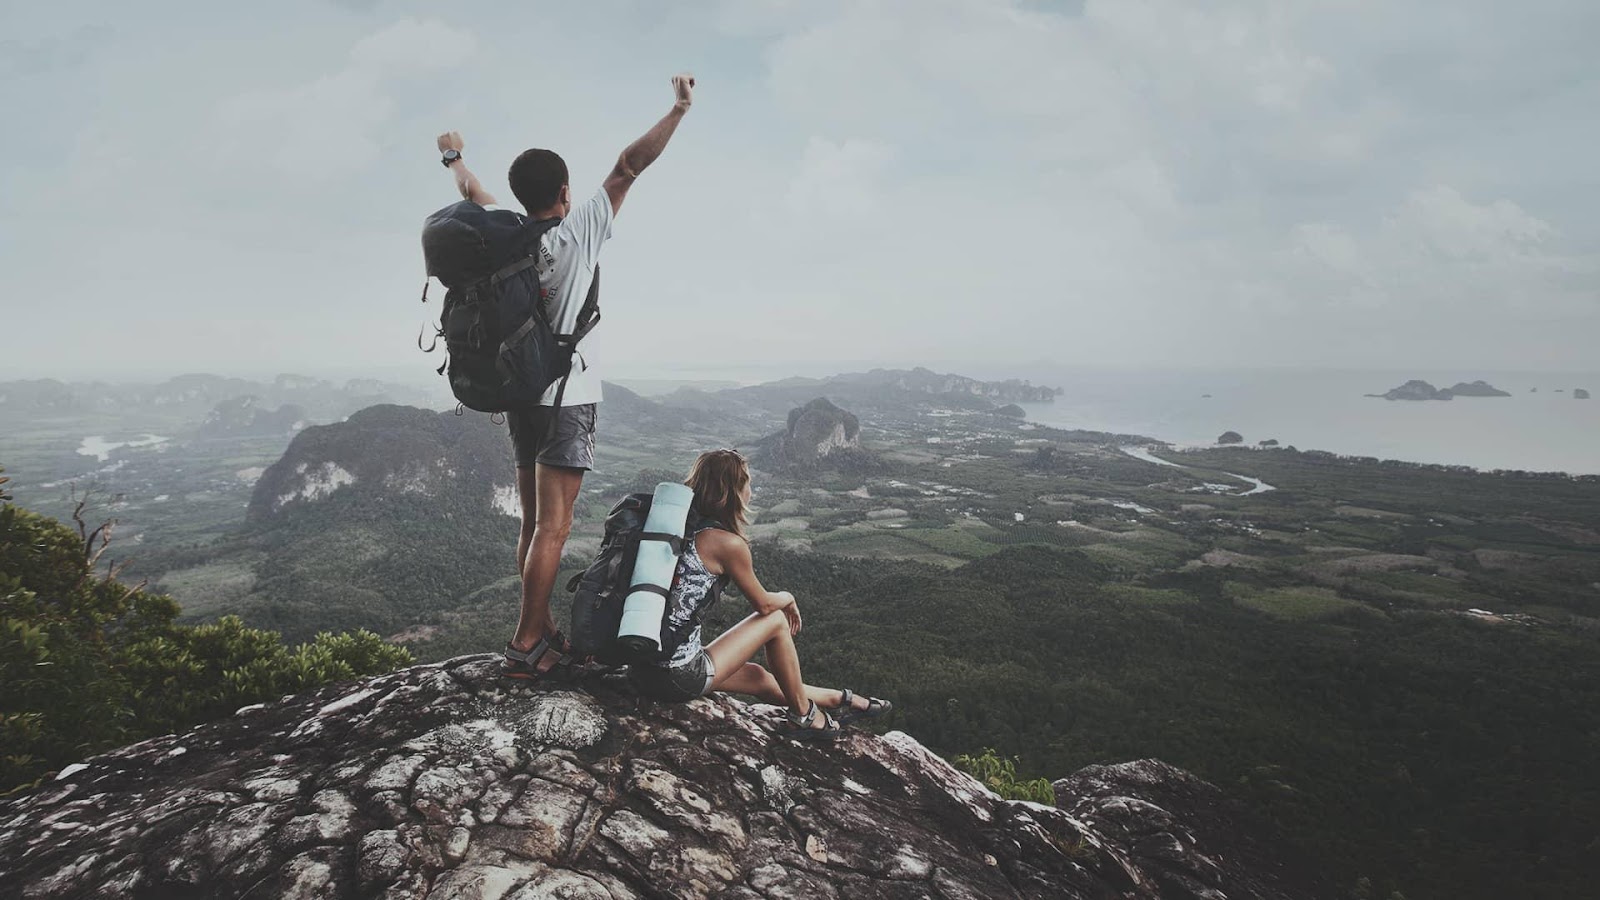 Turismo de aventura: qué es, tipos y cómo minimizar riesgos | Asegurados  Solidarios